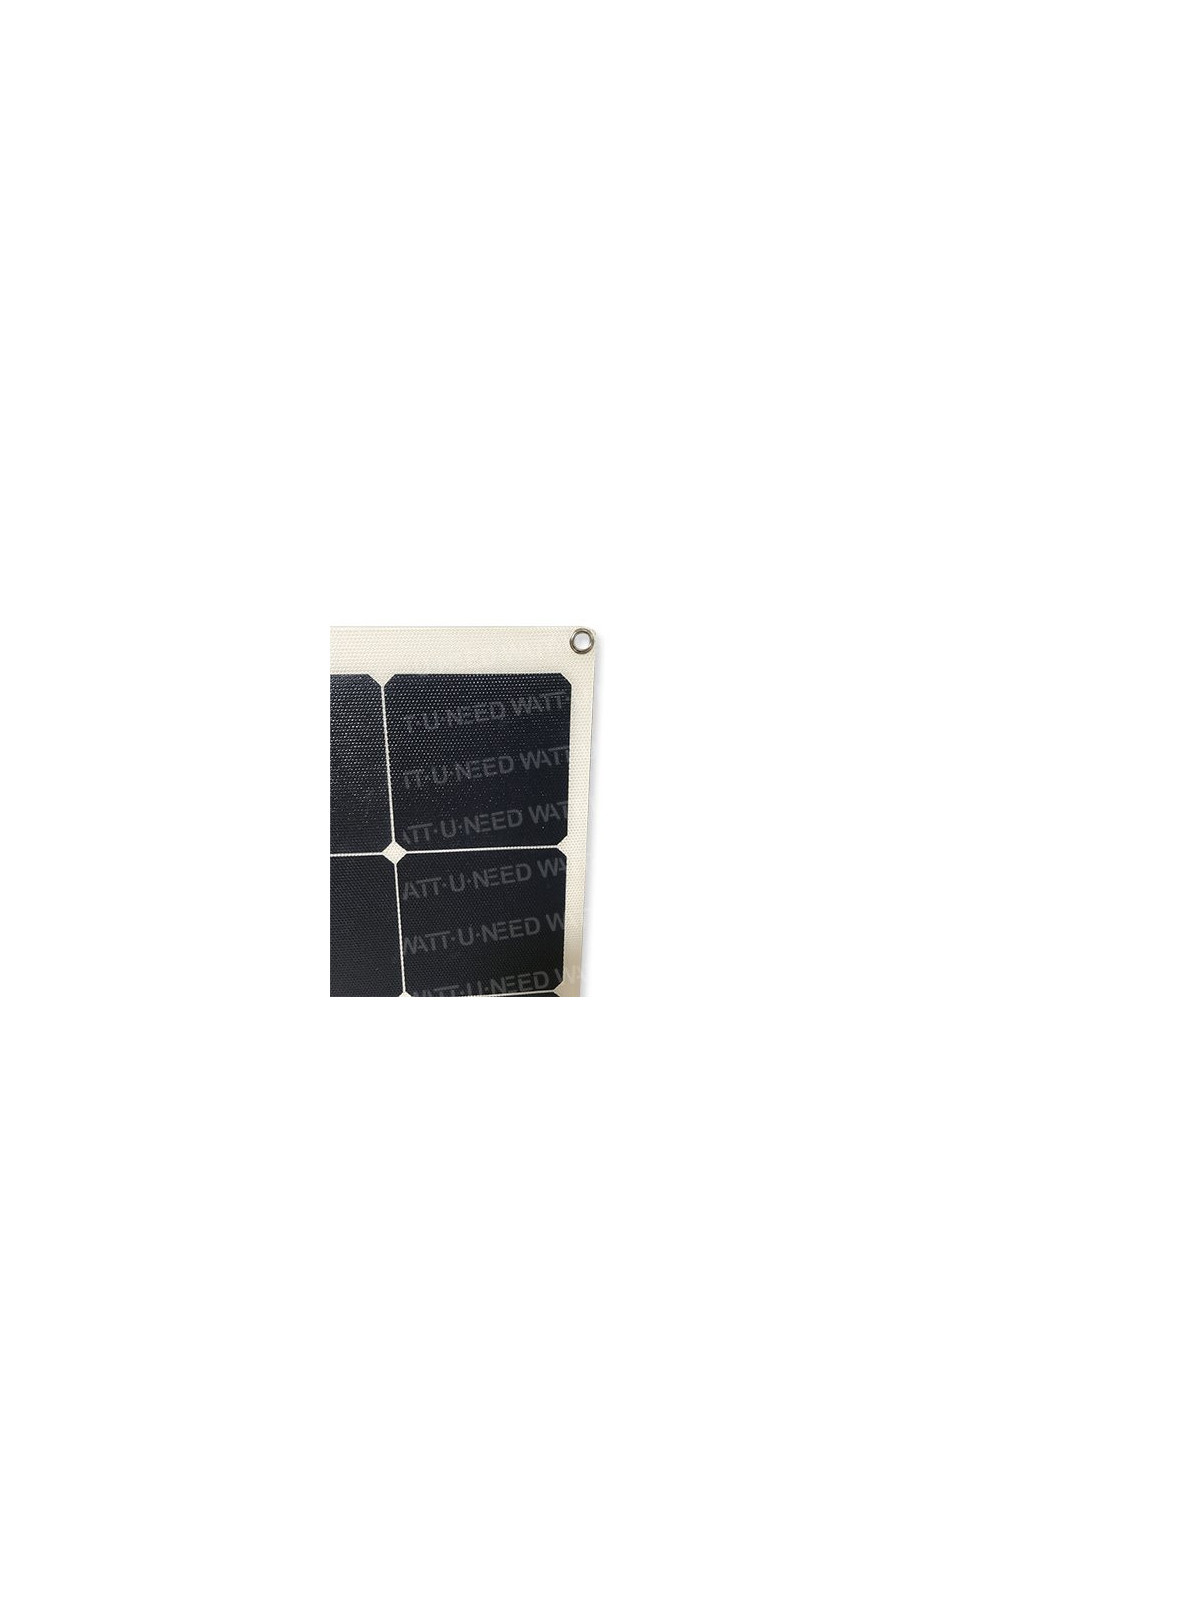 MX FLEX 140 Wp solar panel